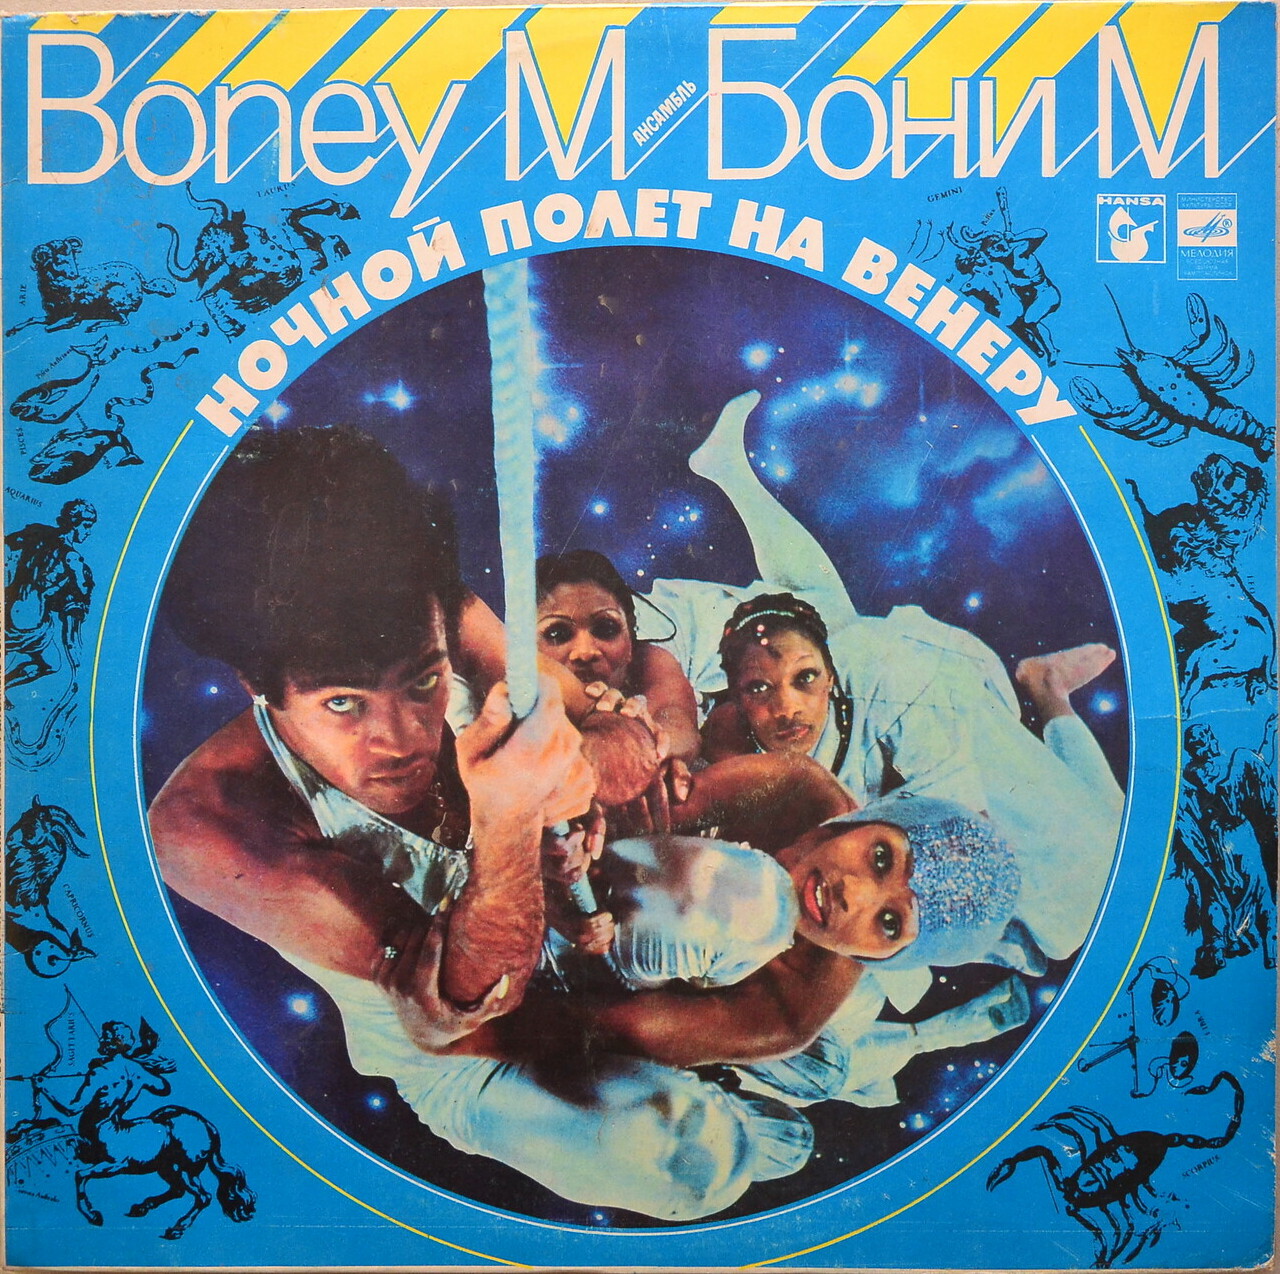 Ансамбль БОНИ М (Boney M) «Ночной полёт на Венеру»